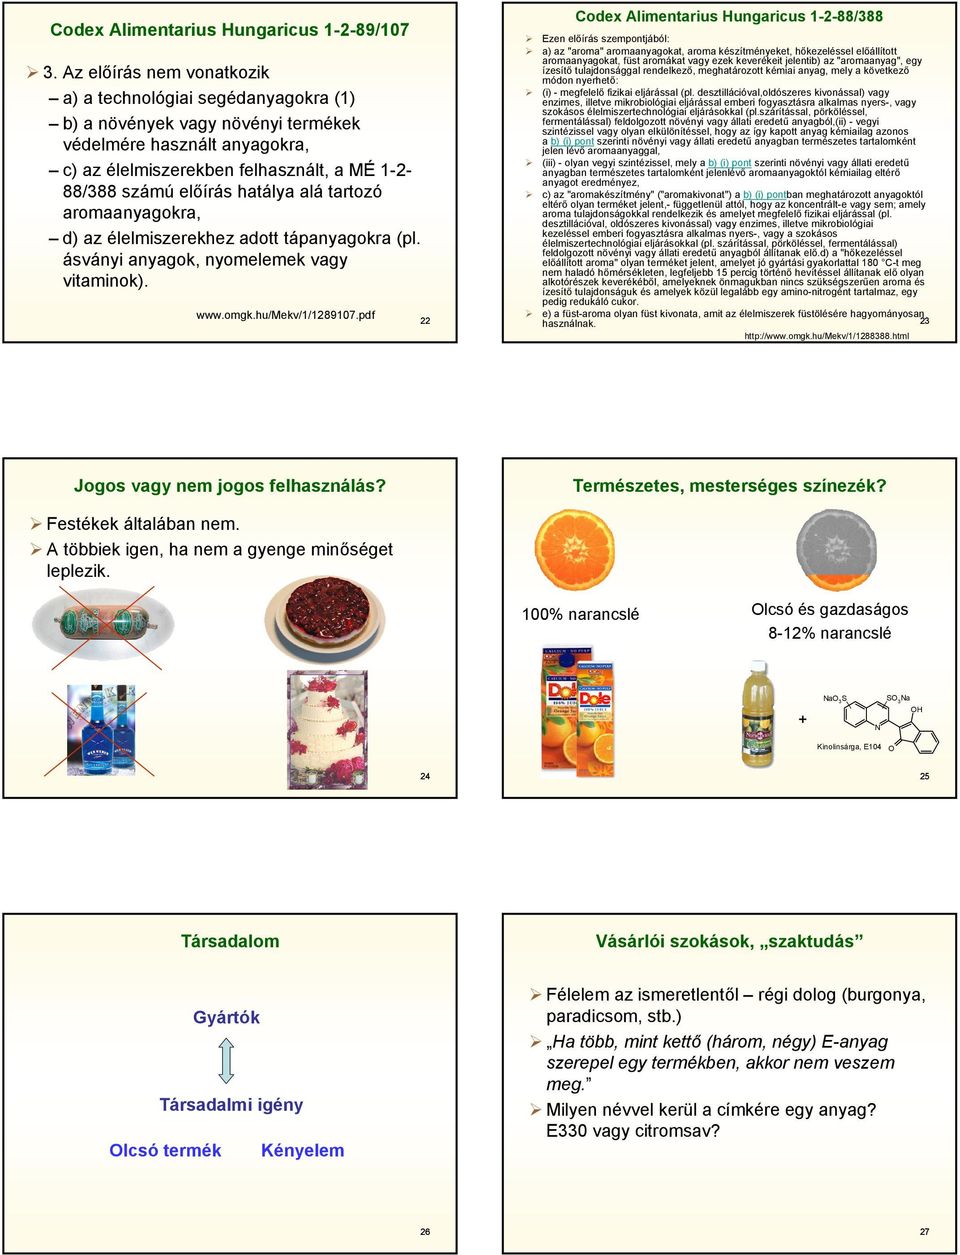 hatálya alá tartozó aromaanyagokra, d) az élelmiszerekhez adott tápanyagokra (pl. ásványi anyagok, nyomelemek vagy vitaminok). www.omgk.hu/mekv/1/1289107.